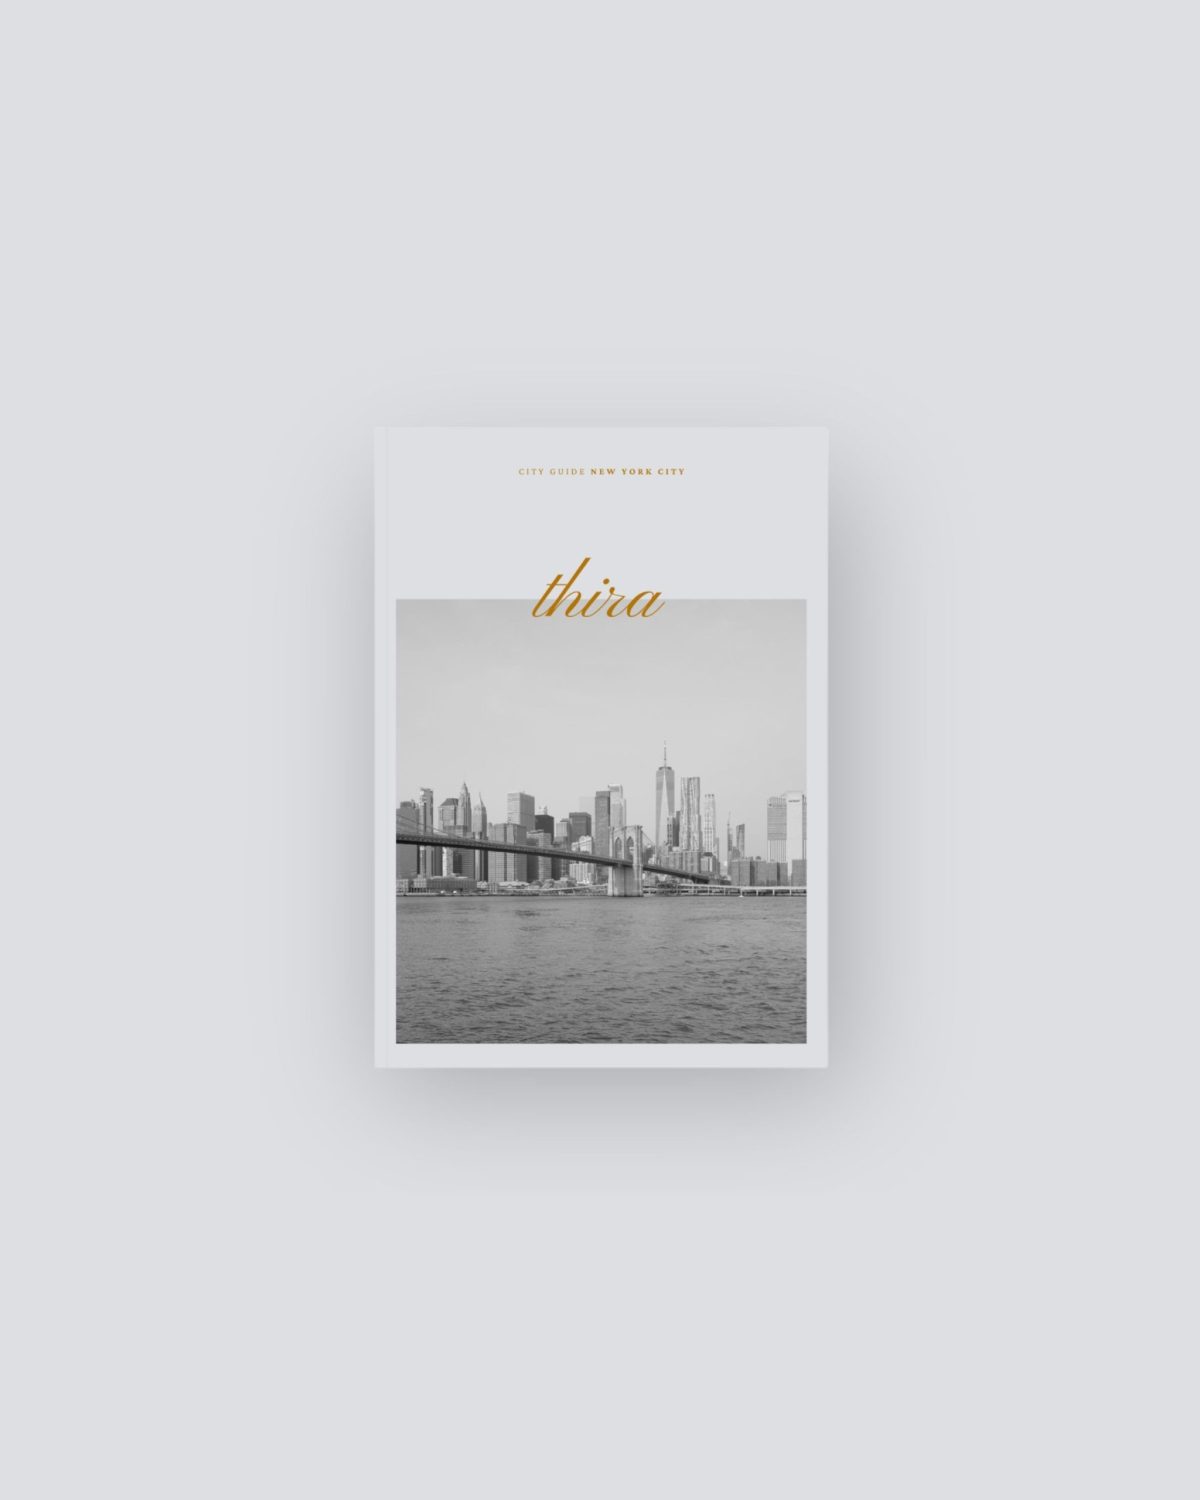 City Guide – New York City Thira